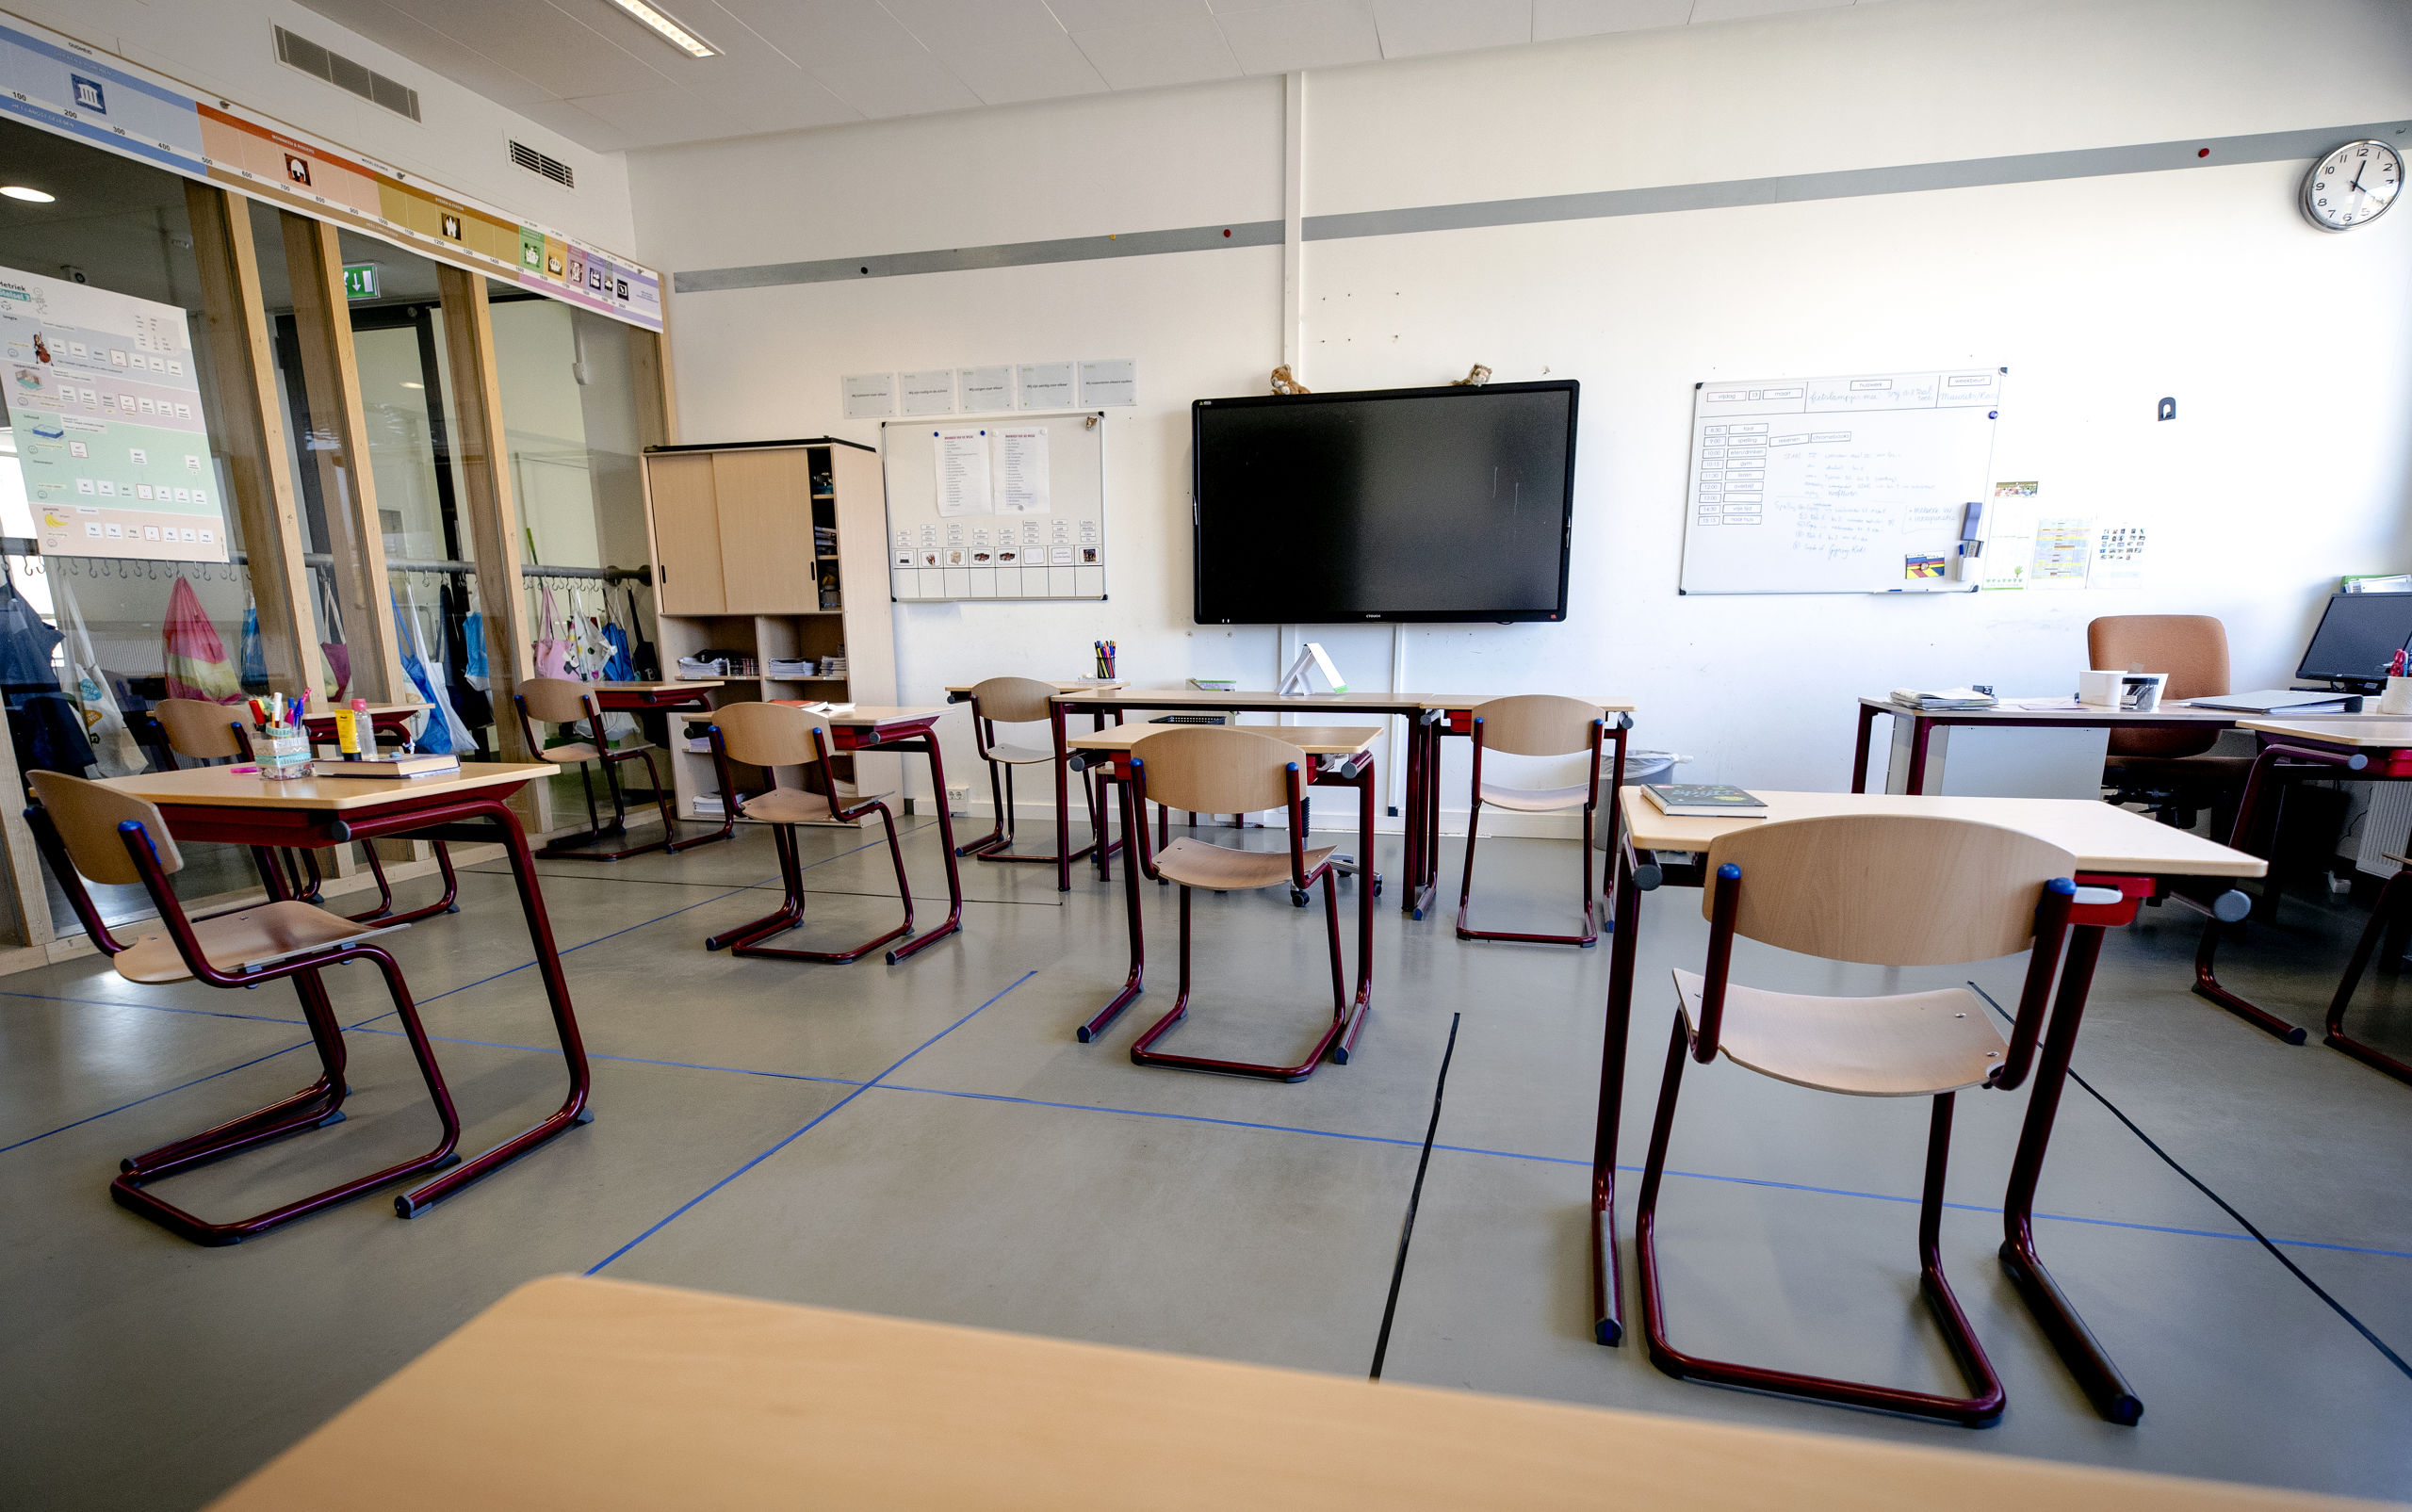 Tafels staan 1,5 meter uit elkaar in een klaslokaal van een basisschool